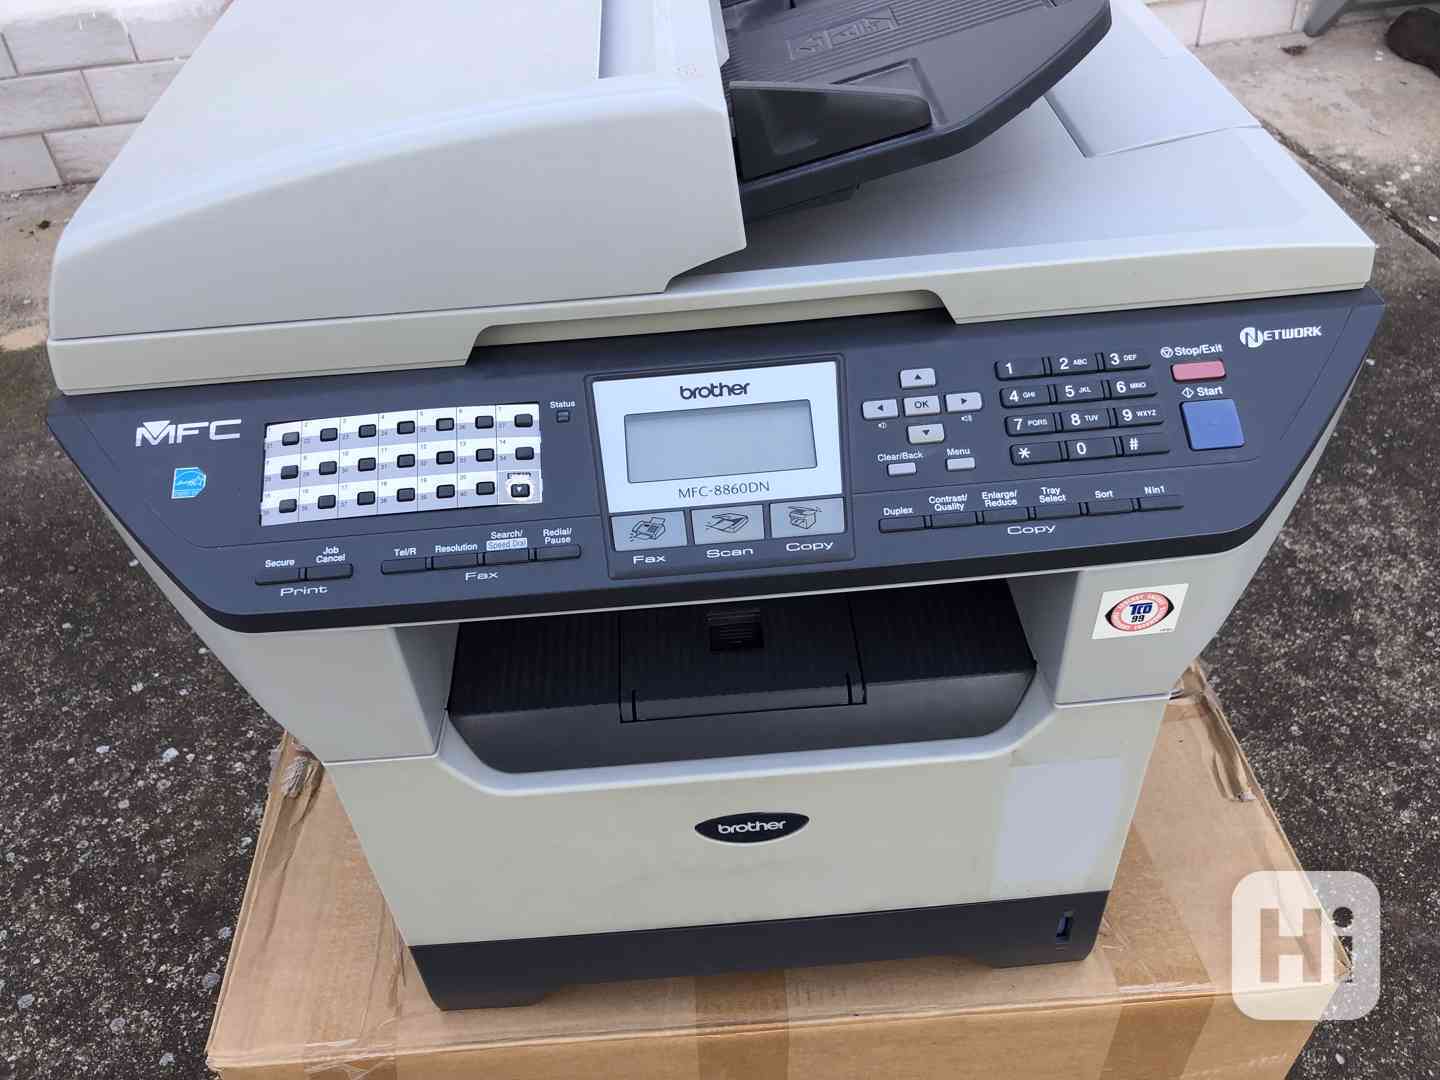 Tiskárna MFC-8860DN Laser MFP A4 – scanner s faxem - foto 1